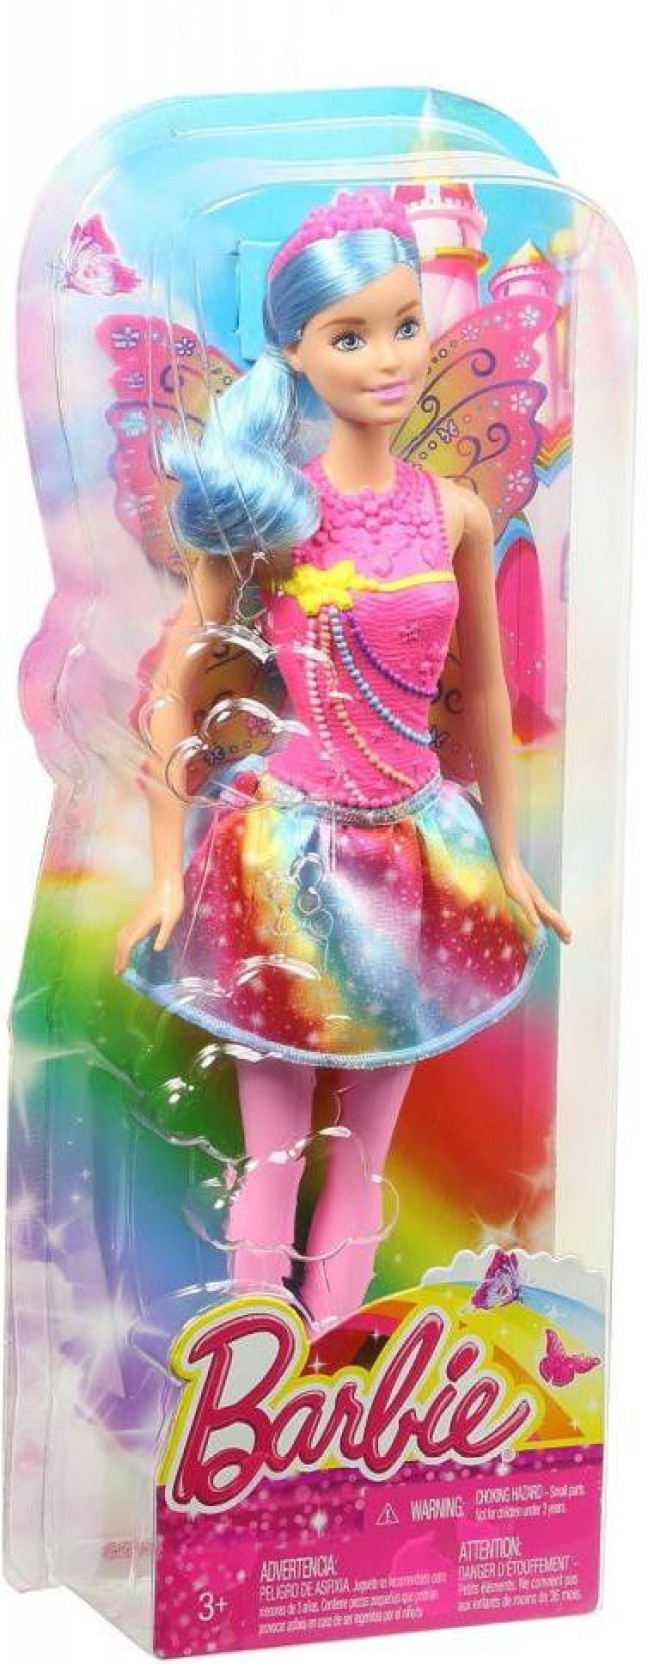 barbie-fairy-rainbow-fashion-doll-dhm50-original-imaemddyv9vs23qv